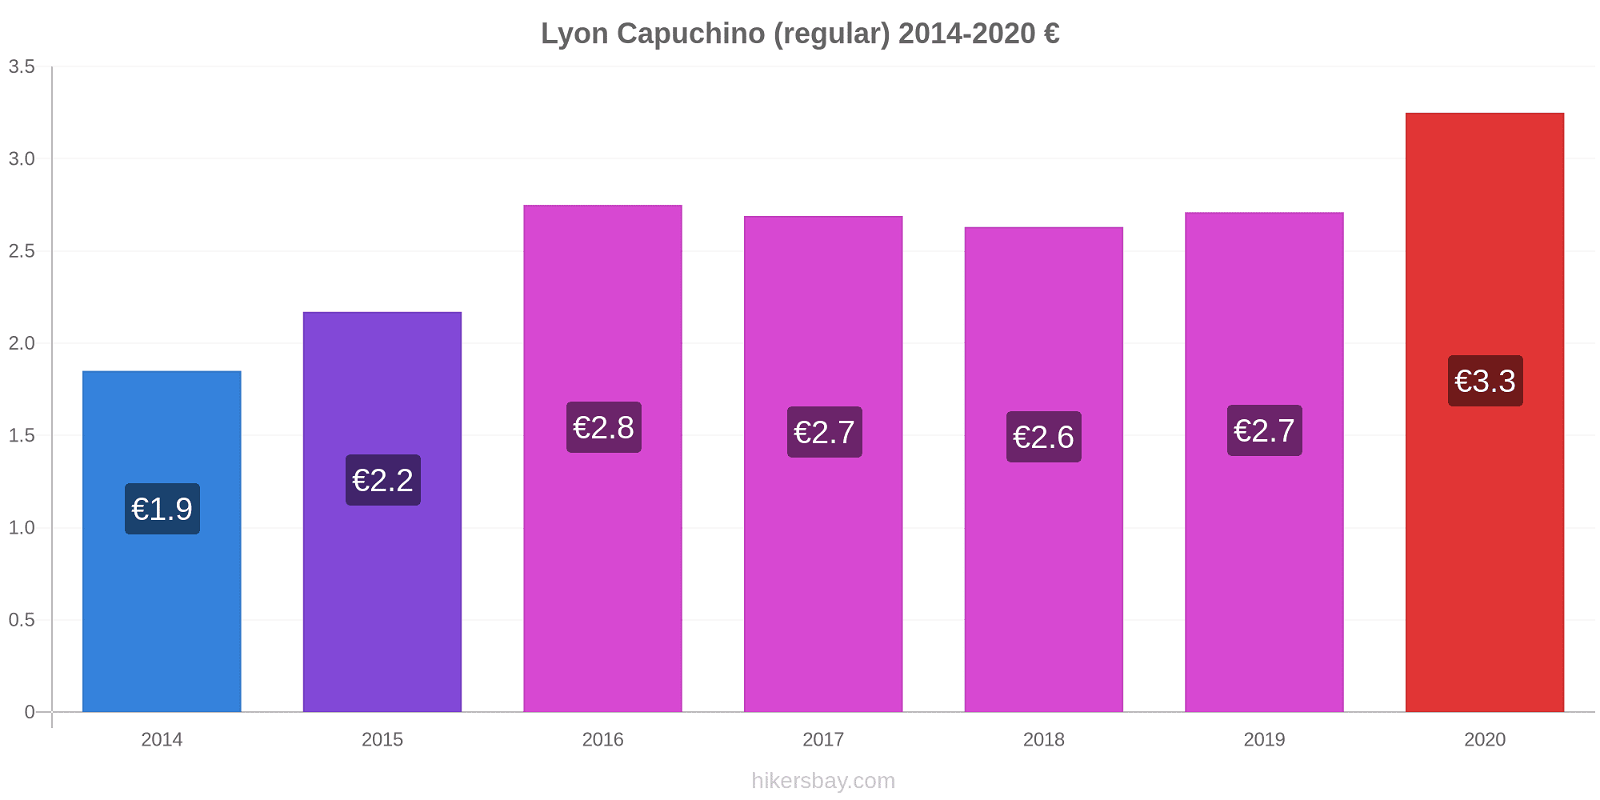 Lyon cambios de precios Capuchino (regular) hikersbay.com